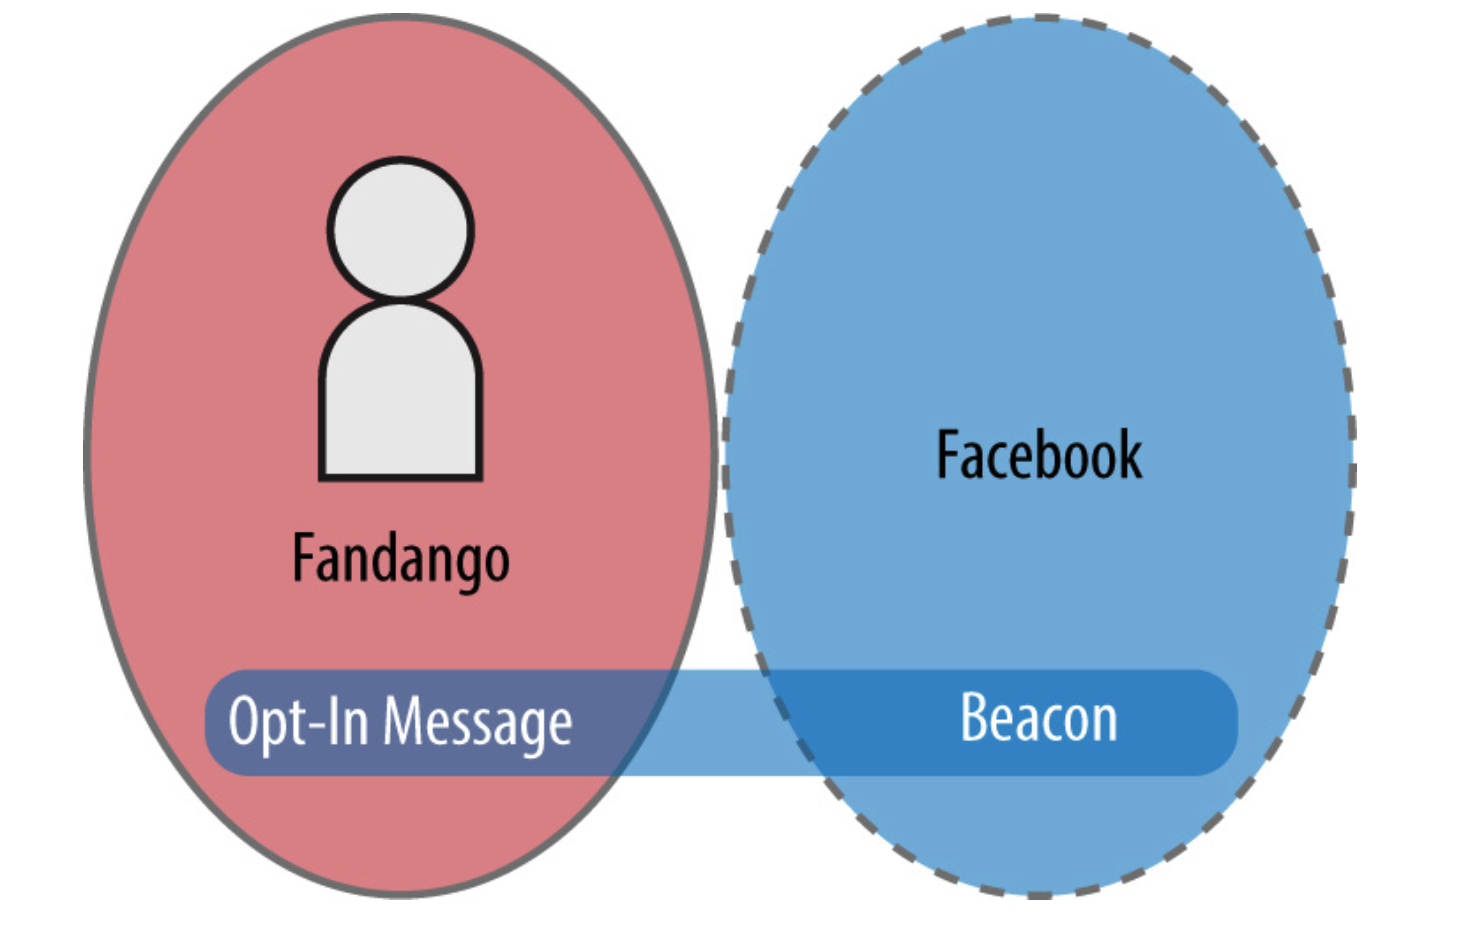 Grafica che mostra il sito Fandango e Facebook come cerchi che non si sovrappongono e che gli utenti percepiscono come luoghi separati.